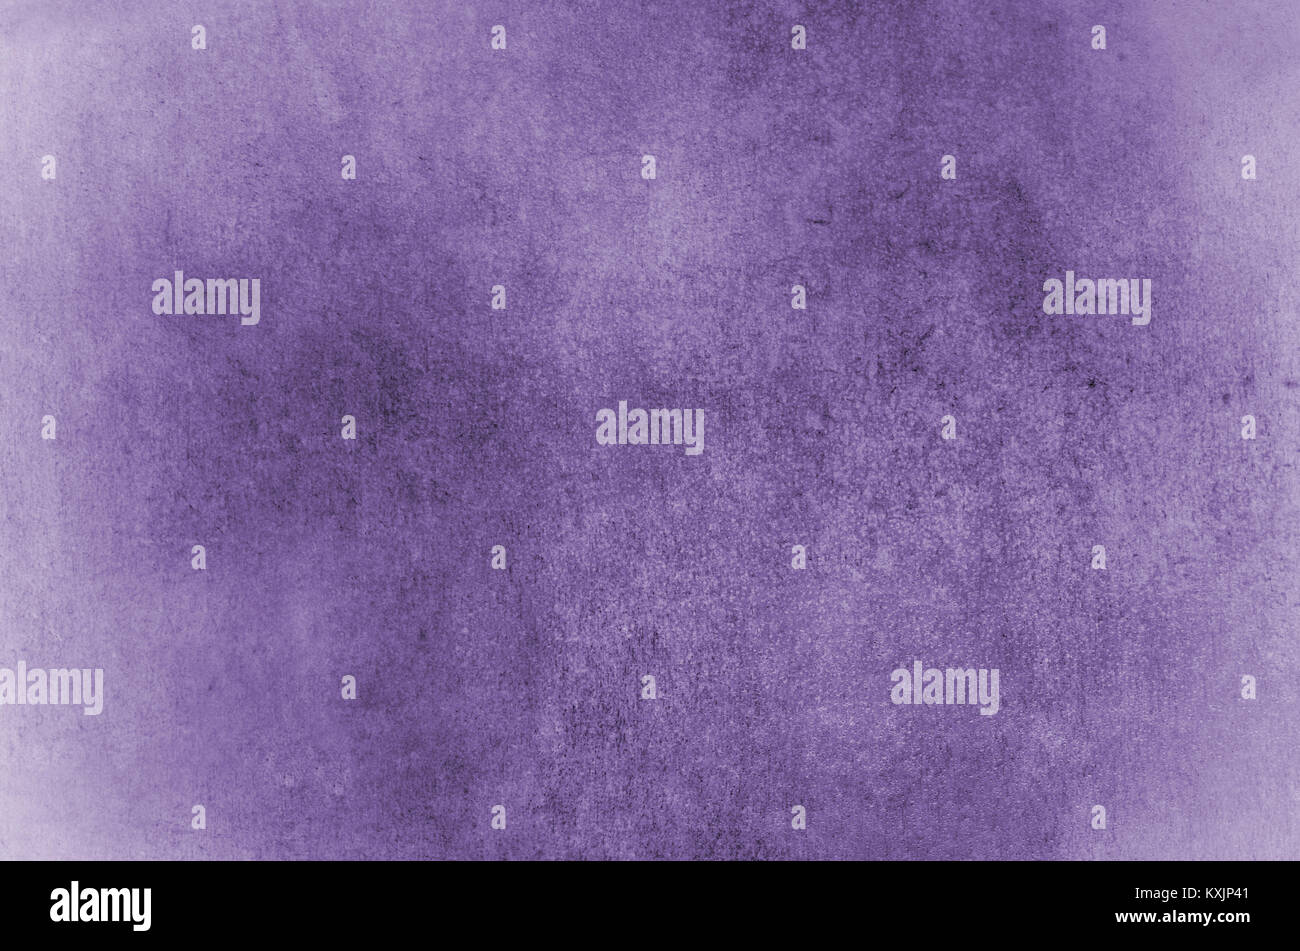 Grob strukturierte Grunge papierbasierten Hintergrund in der violetten Farbtönen. Stockfoto